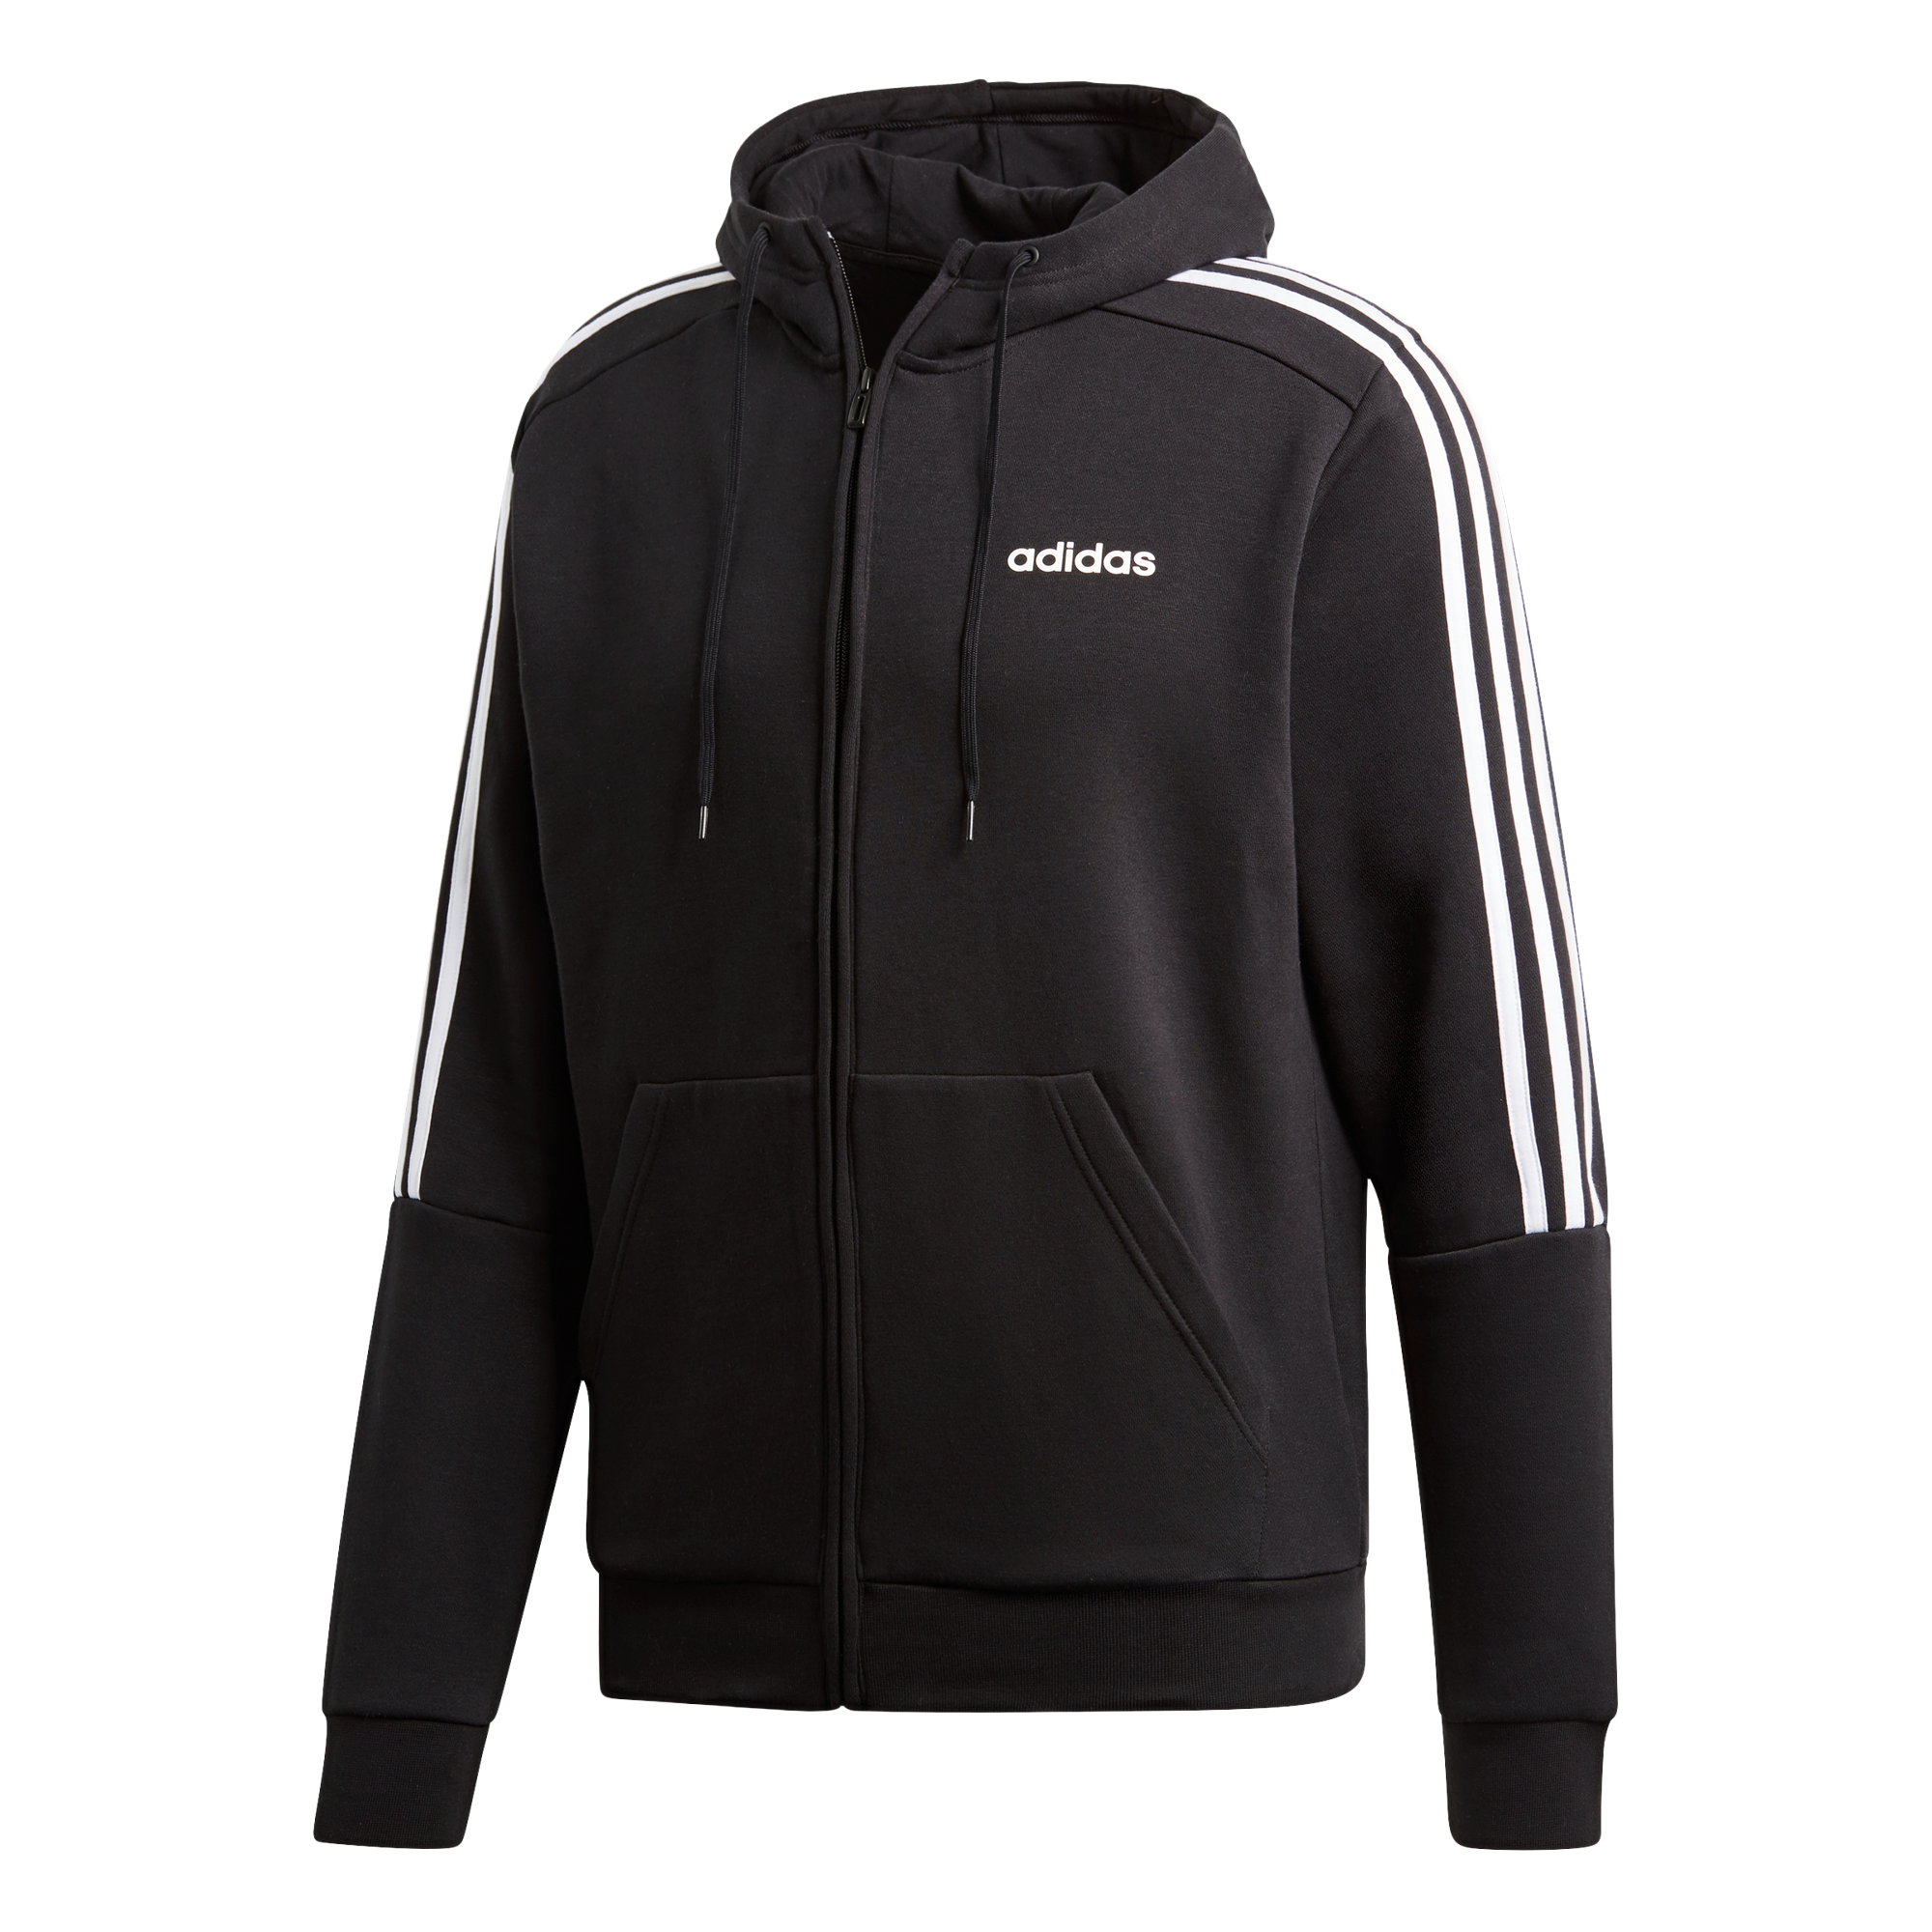 adidas black hoodie jacket